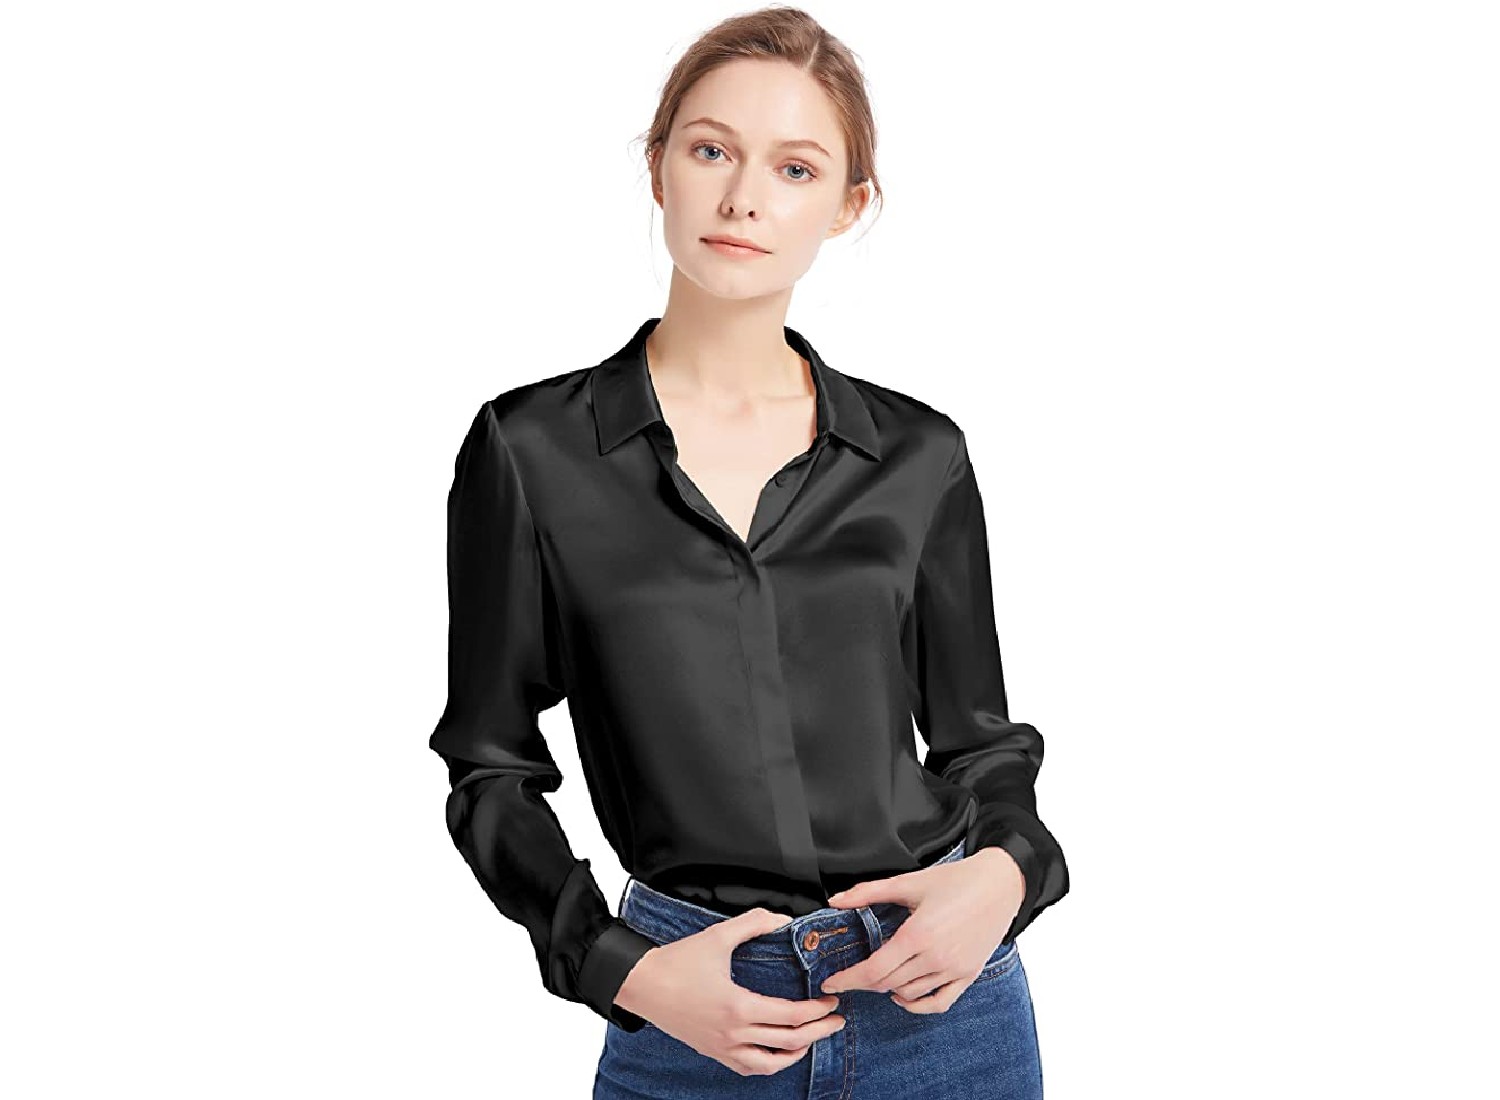 A black, sleek blouse.